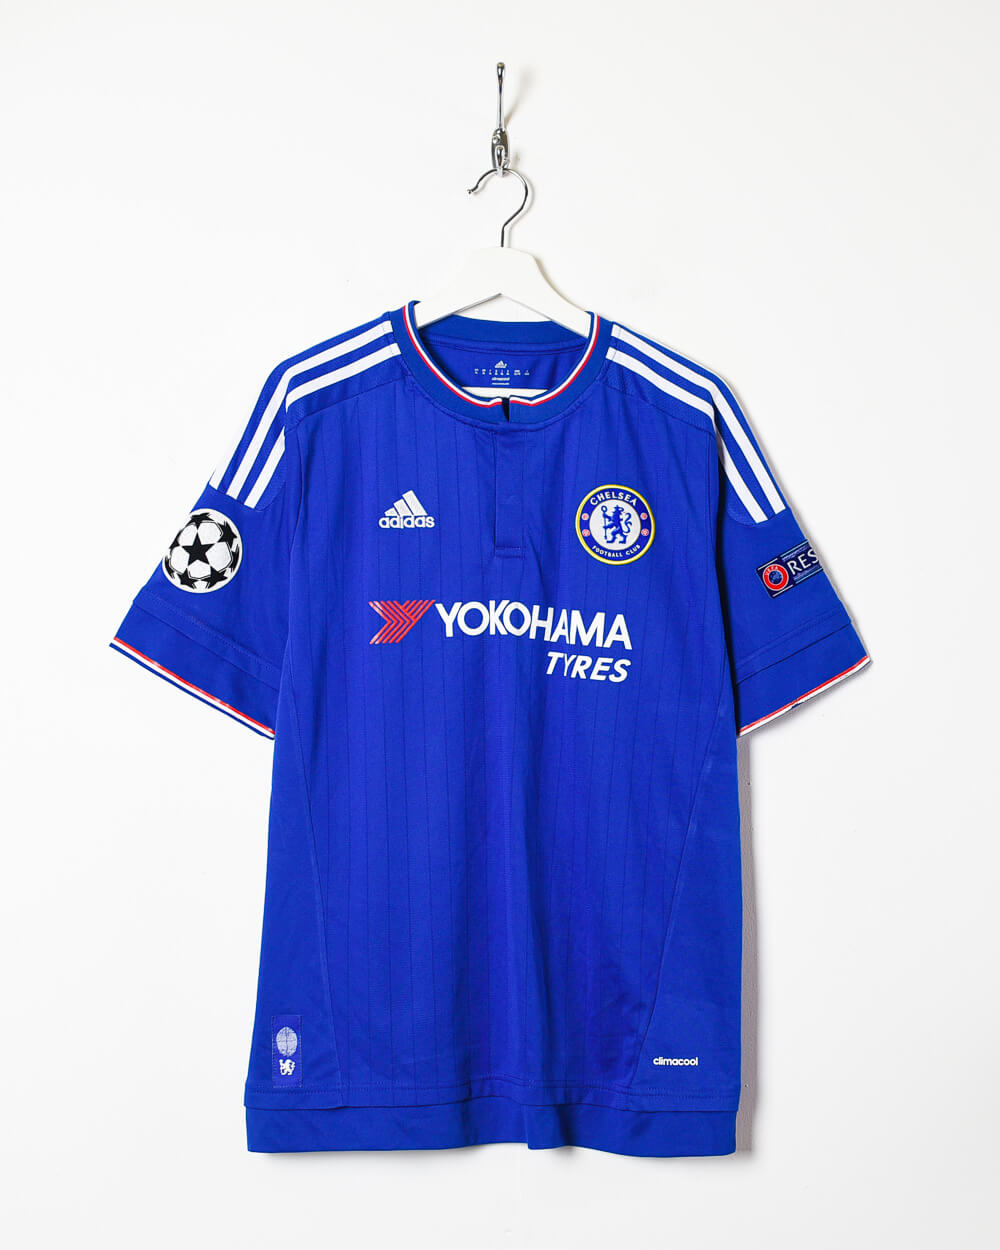 Blue Adidas Chelsea 2015/16 Oscar Home Football Shirt - X-Large